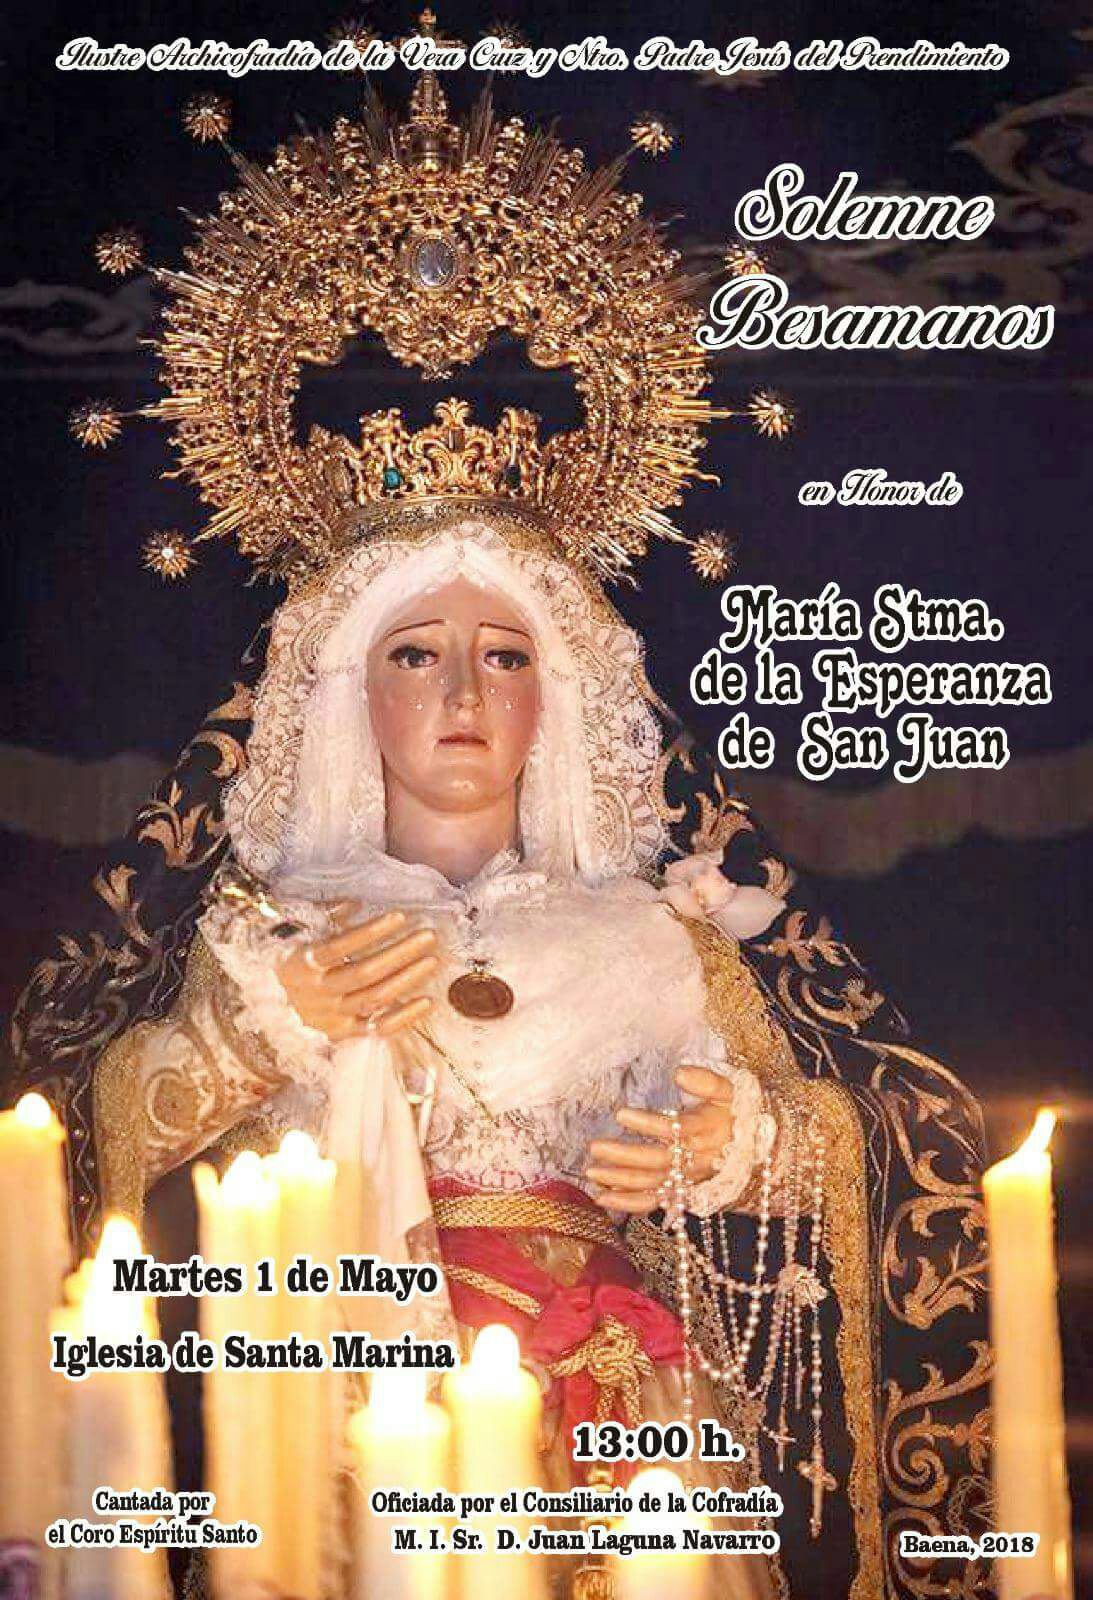 Solemne  Besamanos  en Honor a María Santísima de la Esperanza de San Juan